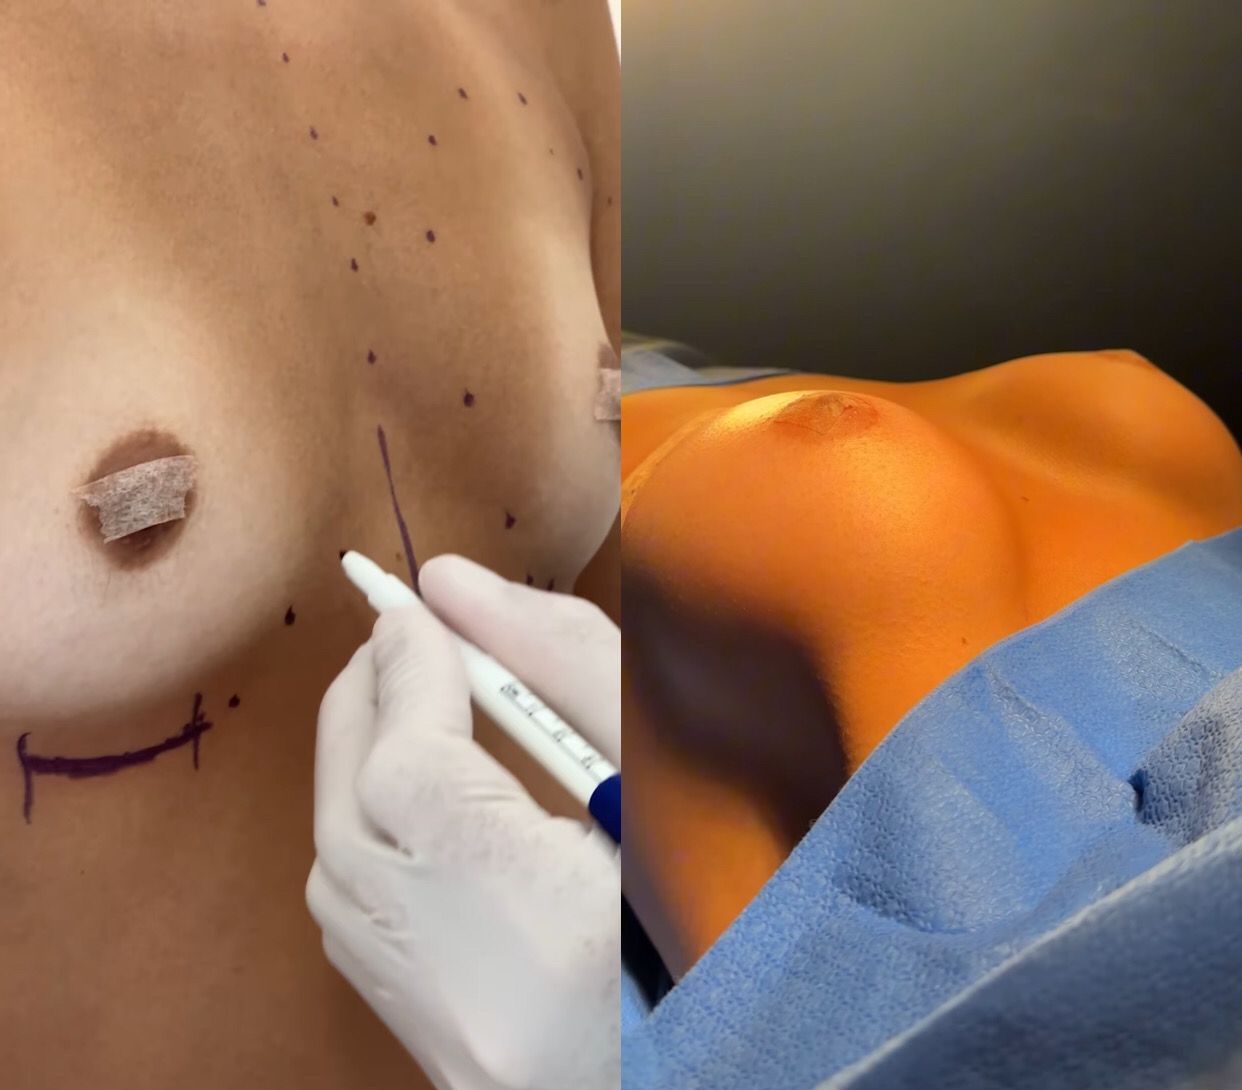 Antes e depois da cirurgia - Imagens: Reprodução/Instagram